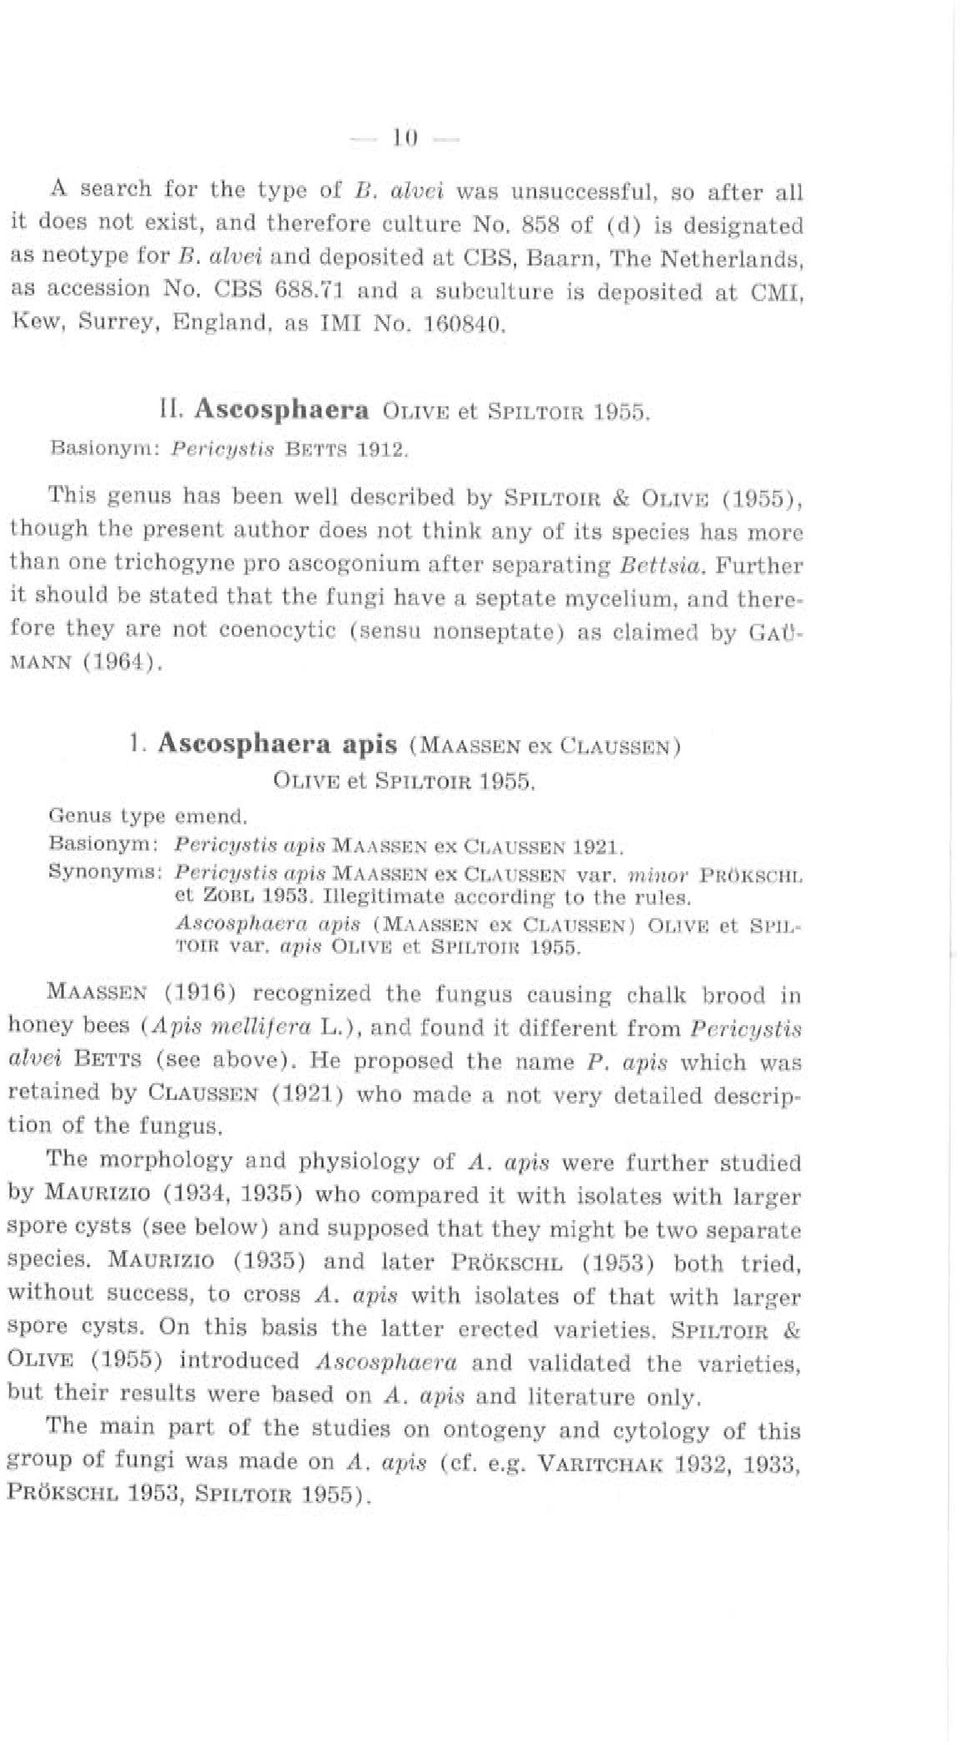 Aseosphaera OLIVE et SPILTOIR 1955. Basionym: Pericusiis B ETTS 1912.